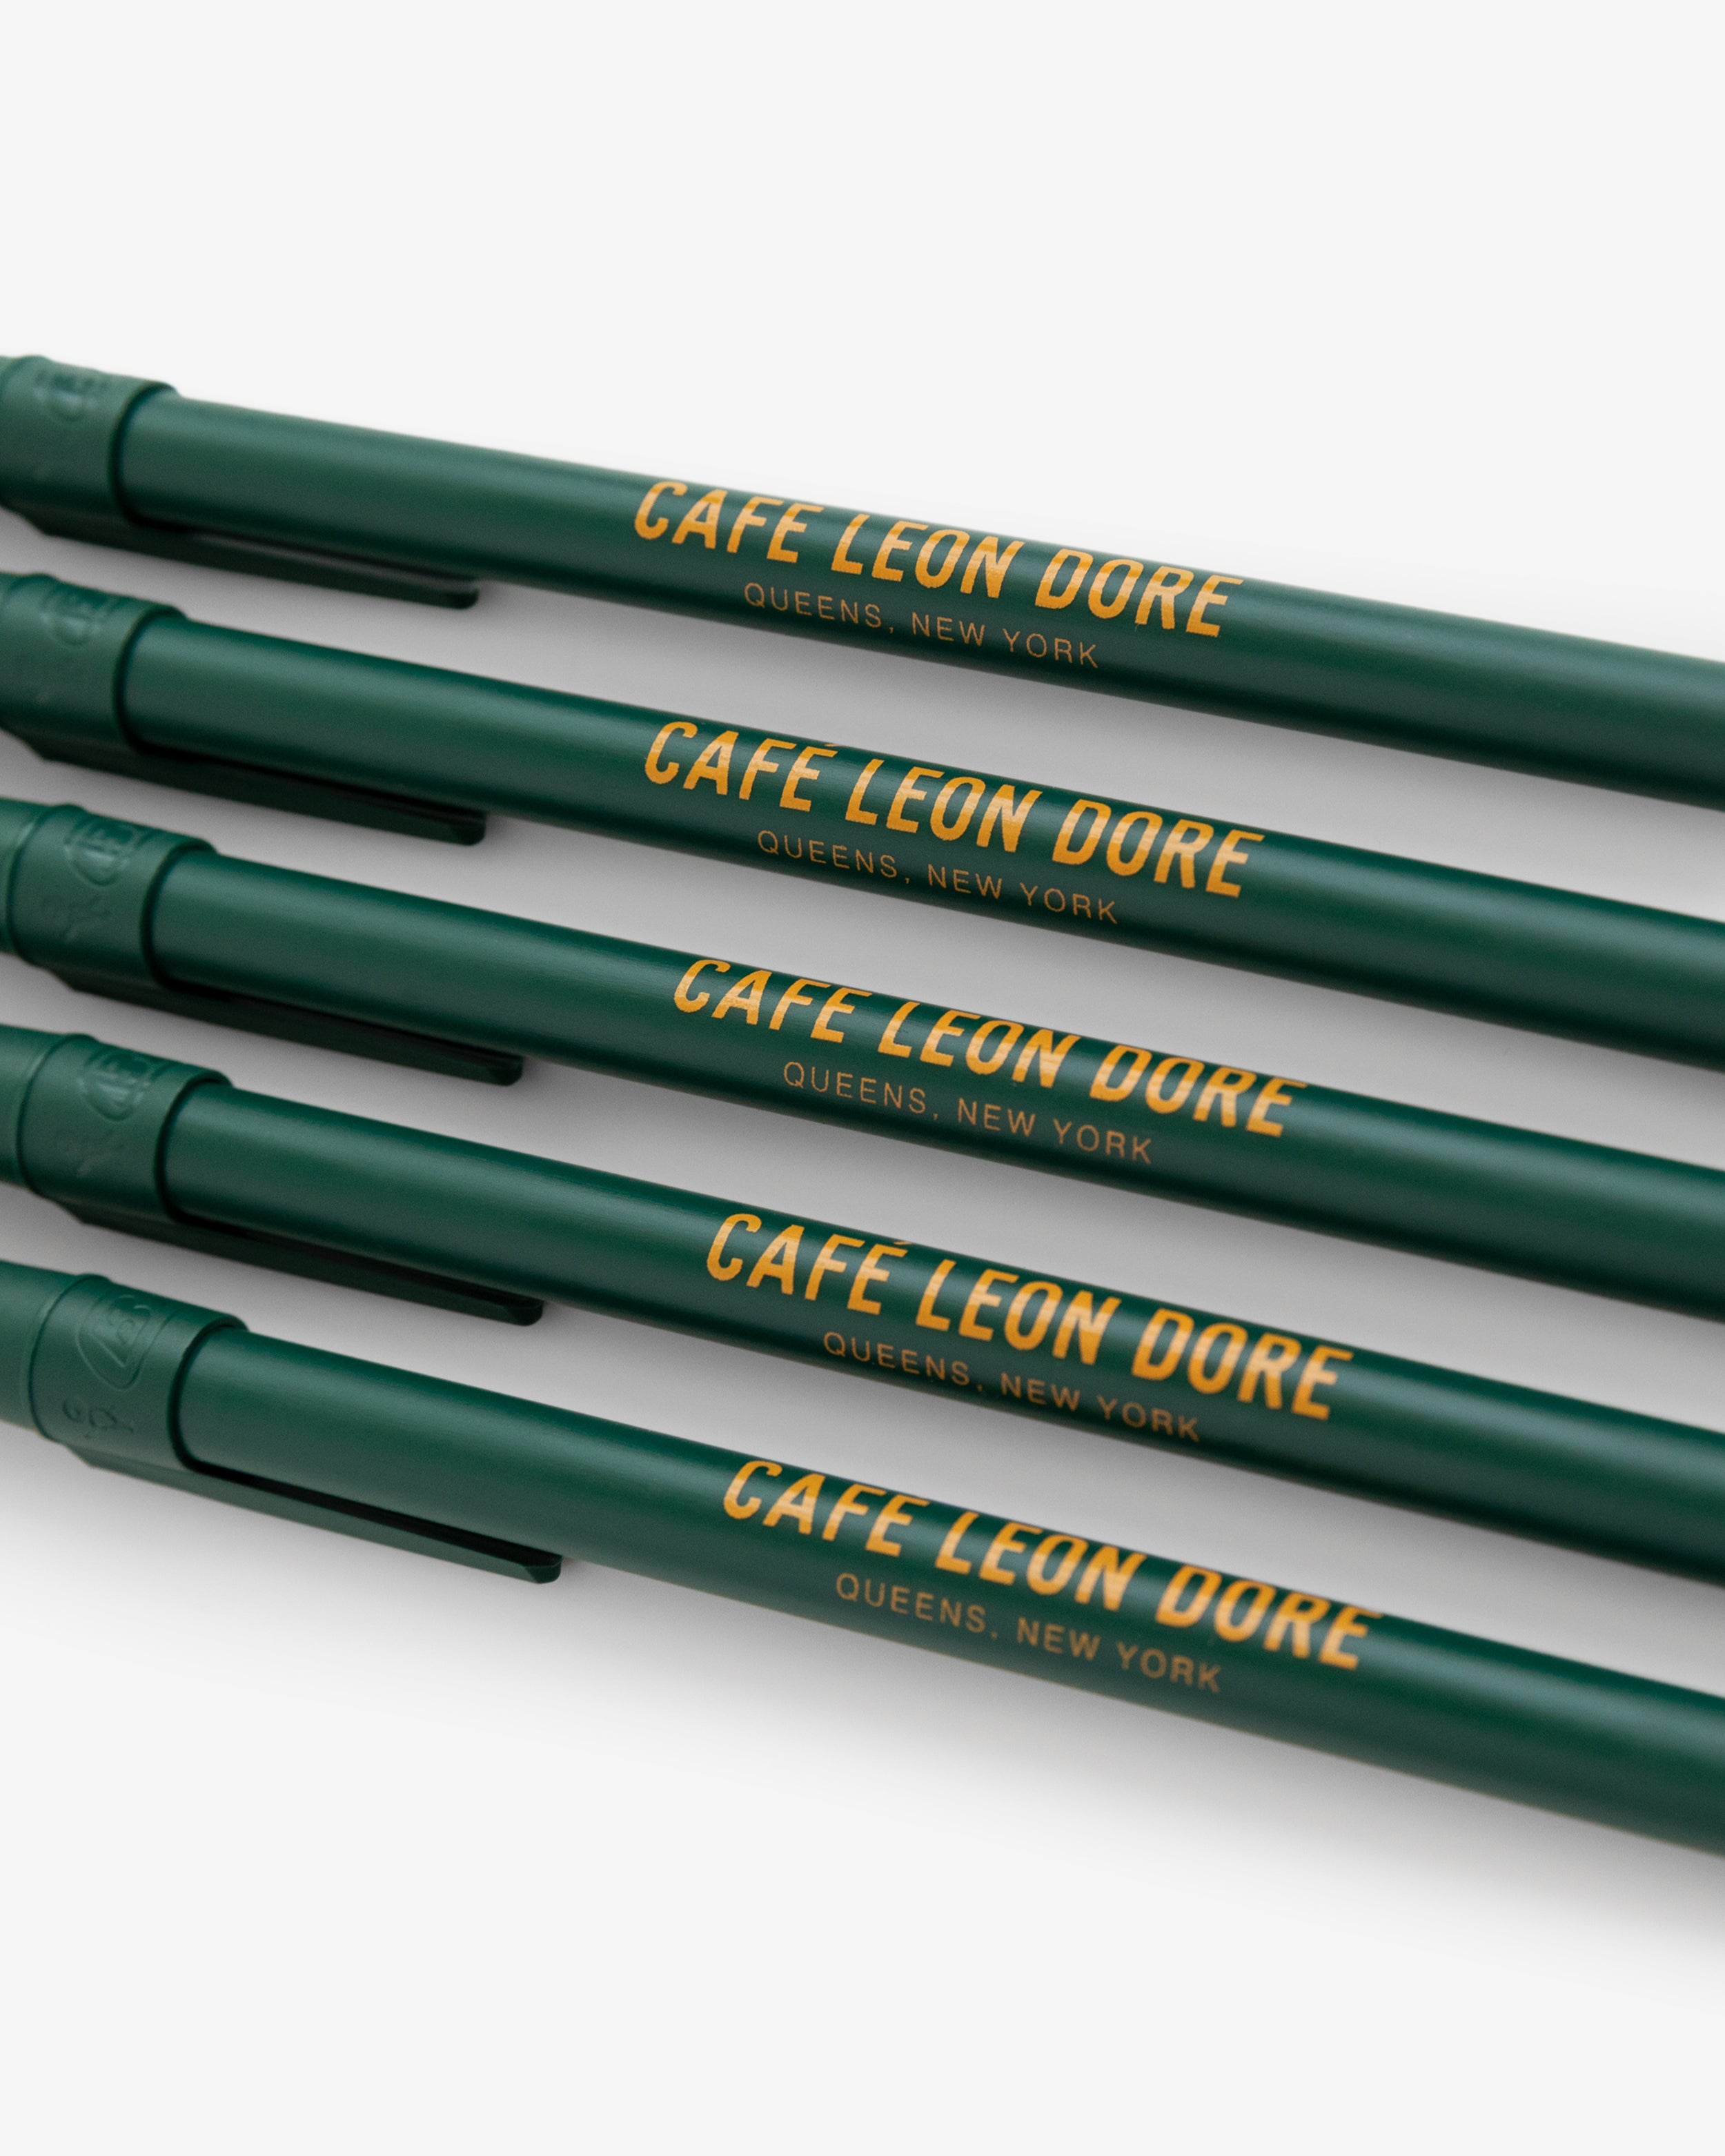 Café Leon Dore Ballpoint Pen Pack